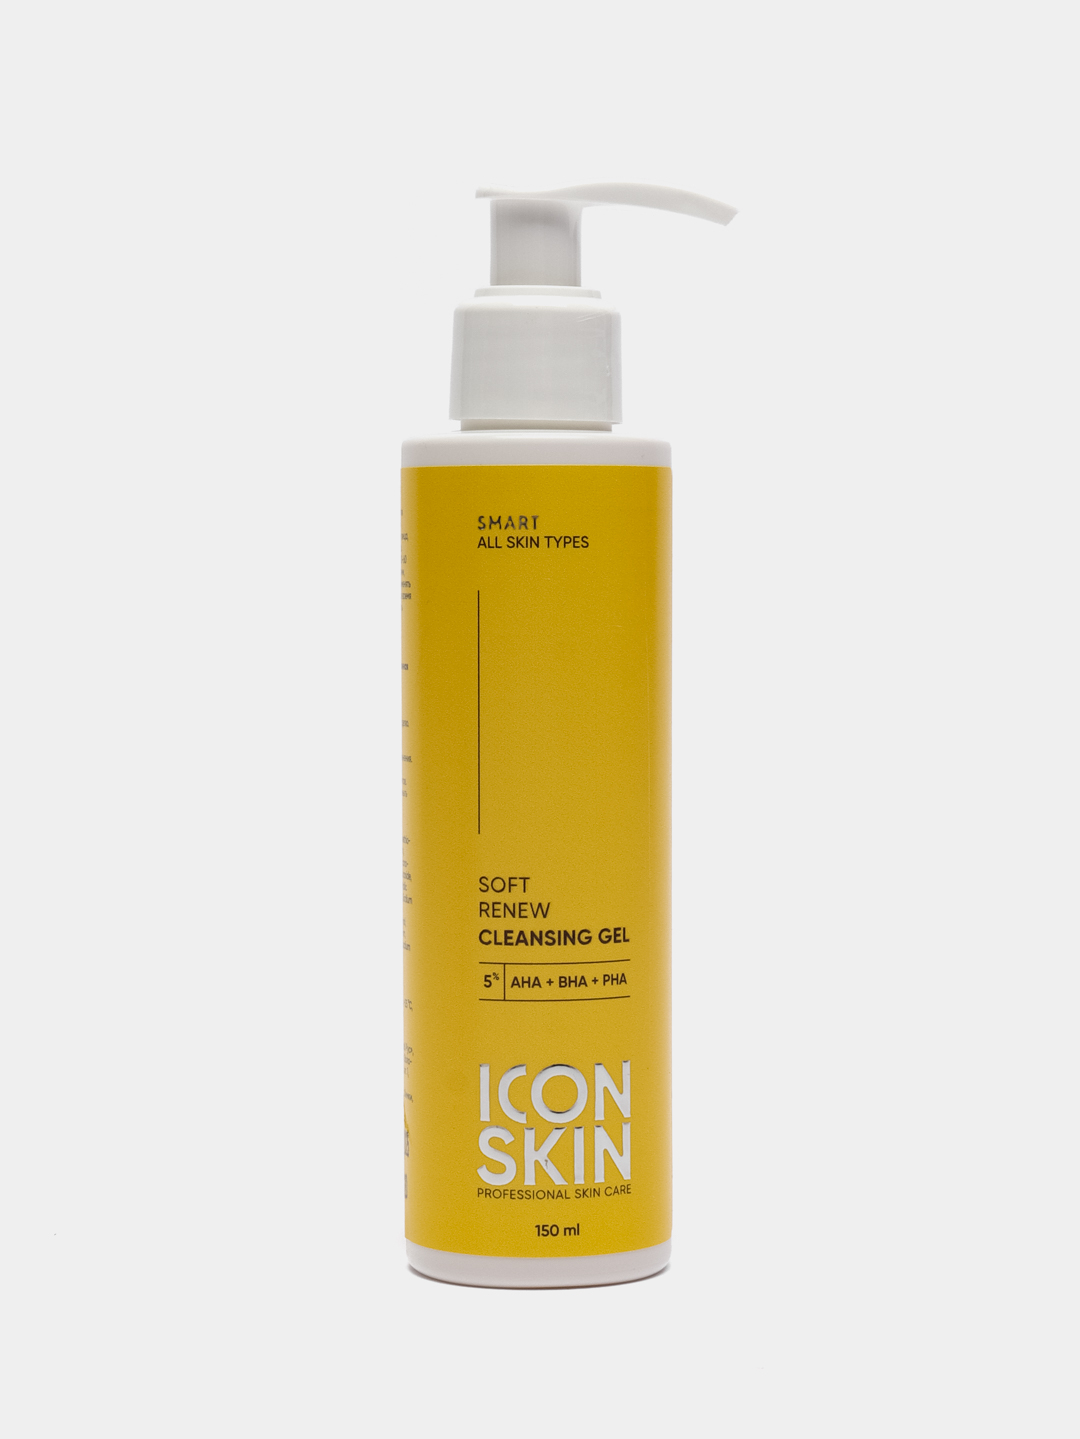 Icon Skin Soft Renew гель для умывания. Masil 2 refreshing Soft Foam мягкая освежающая пенка 300мл. Icon skin гель для умывания